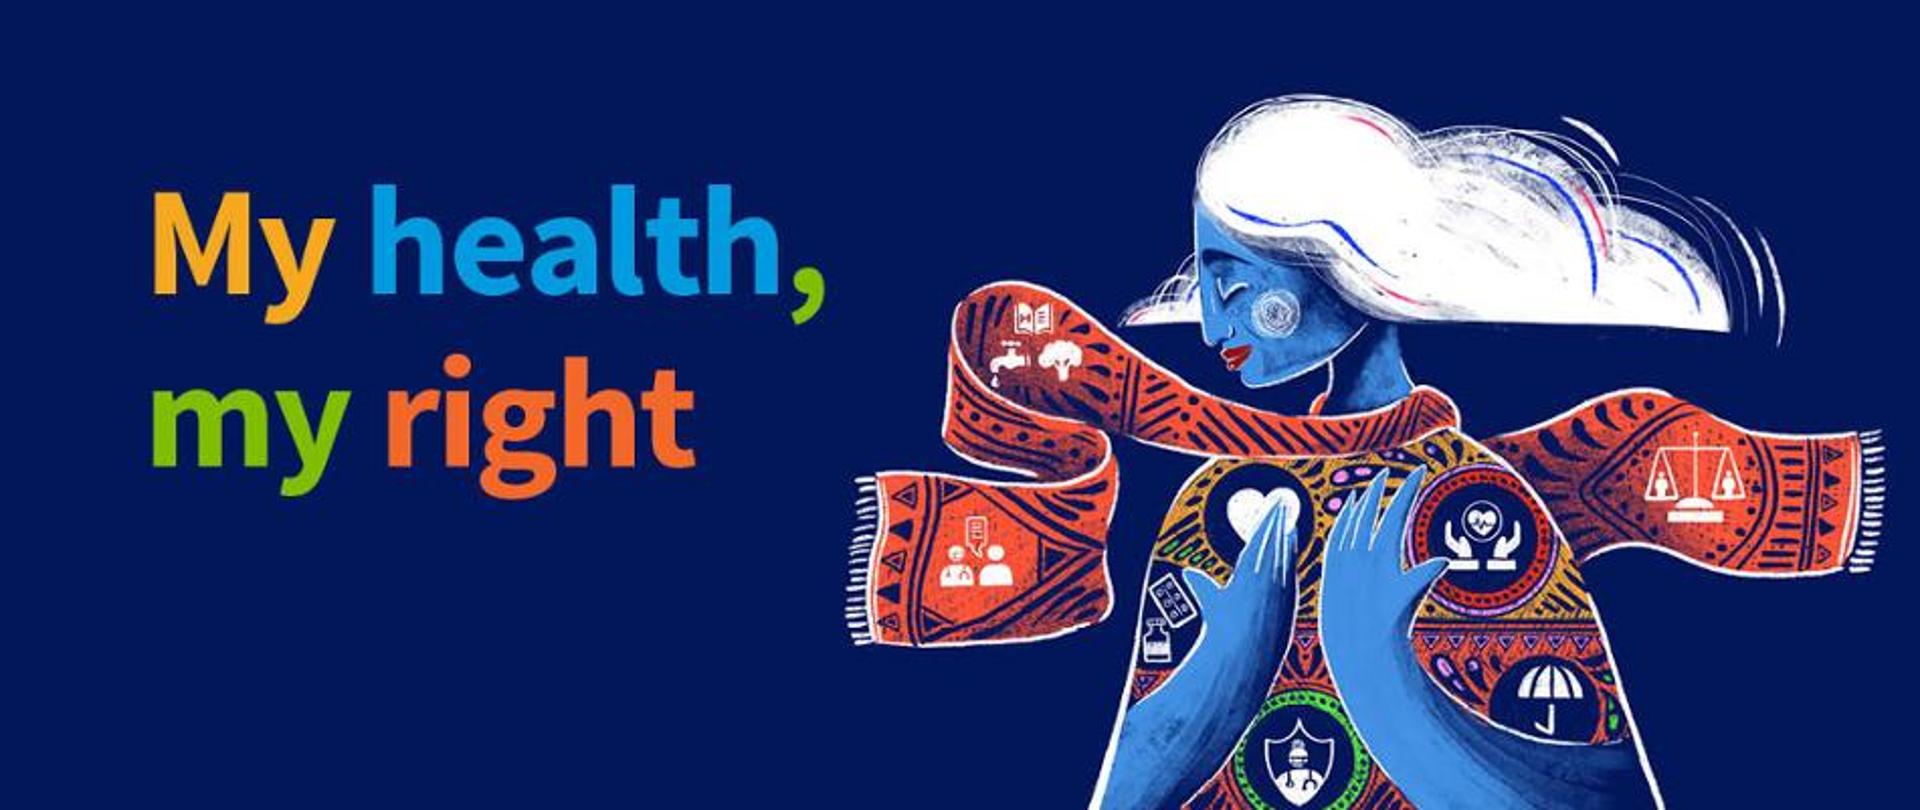 na niebieskim tle stylizowana postać symbol Światowego Dnia Zdrowia i napis - my health, my right